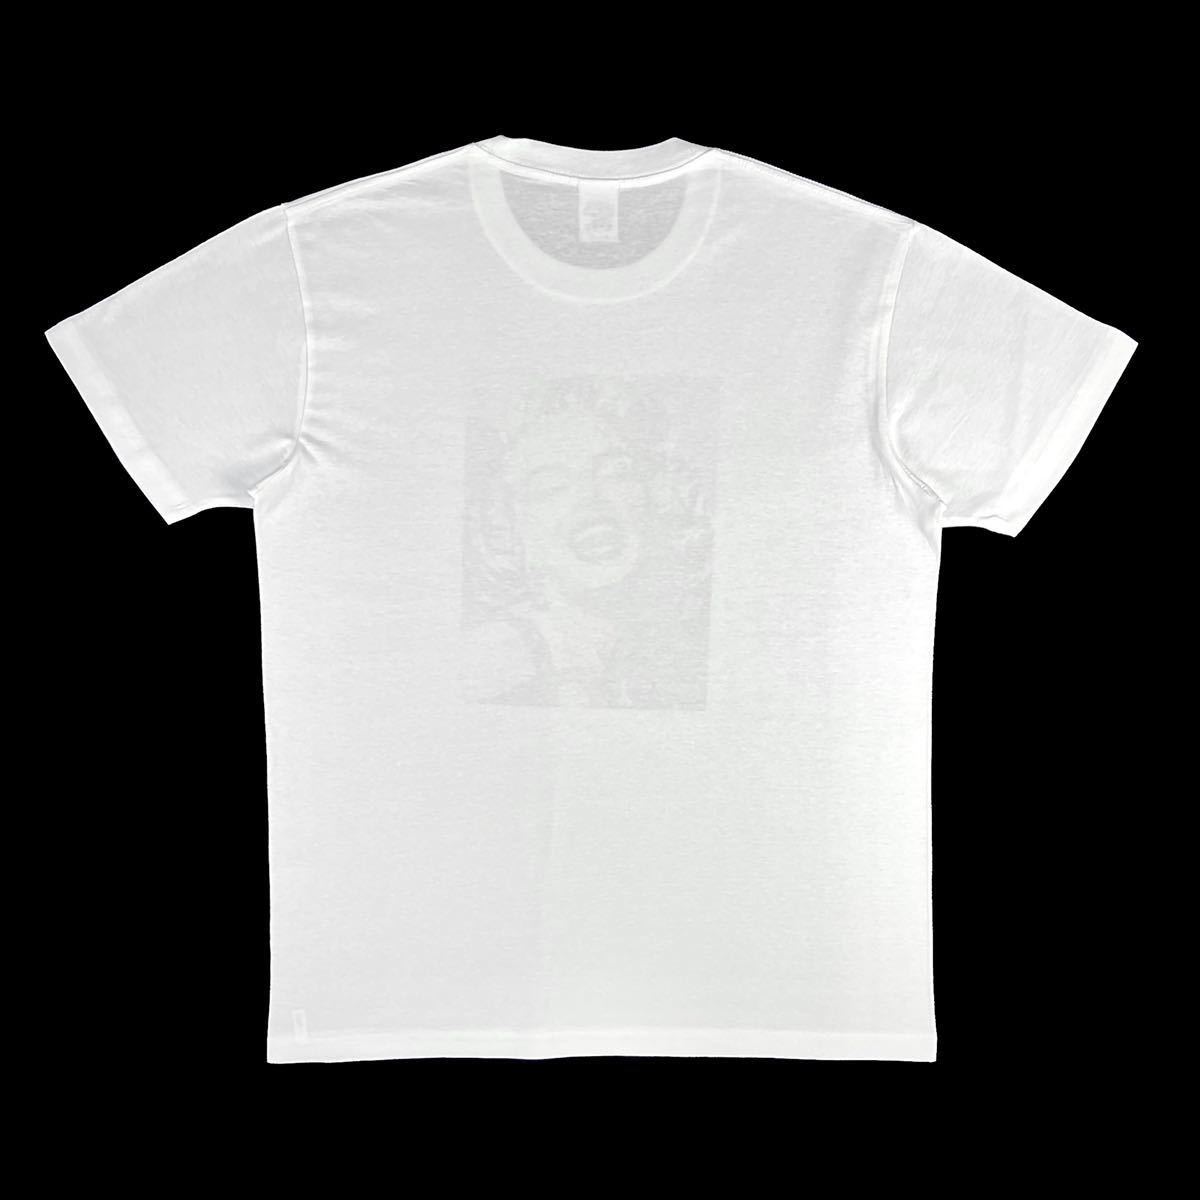 新品 マリリンモンロー 20世紀 セックスシンボル ハリウッド黄金期 映画 ブロンド女優 ポップアート Tシャツ Sサイズ 小さい タイト スリム_画像10